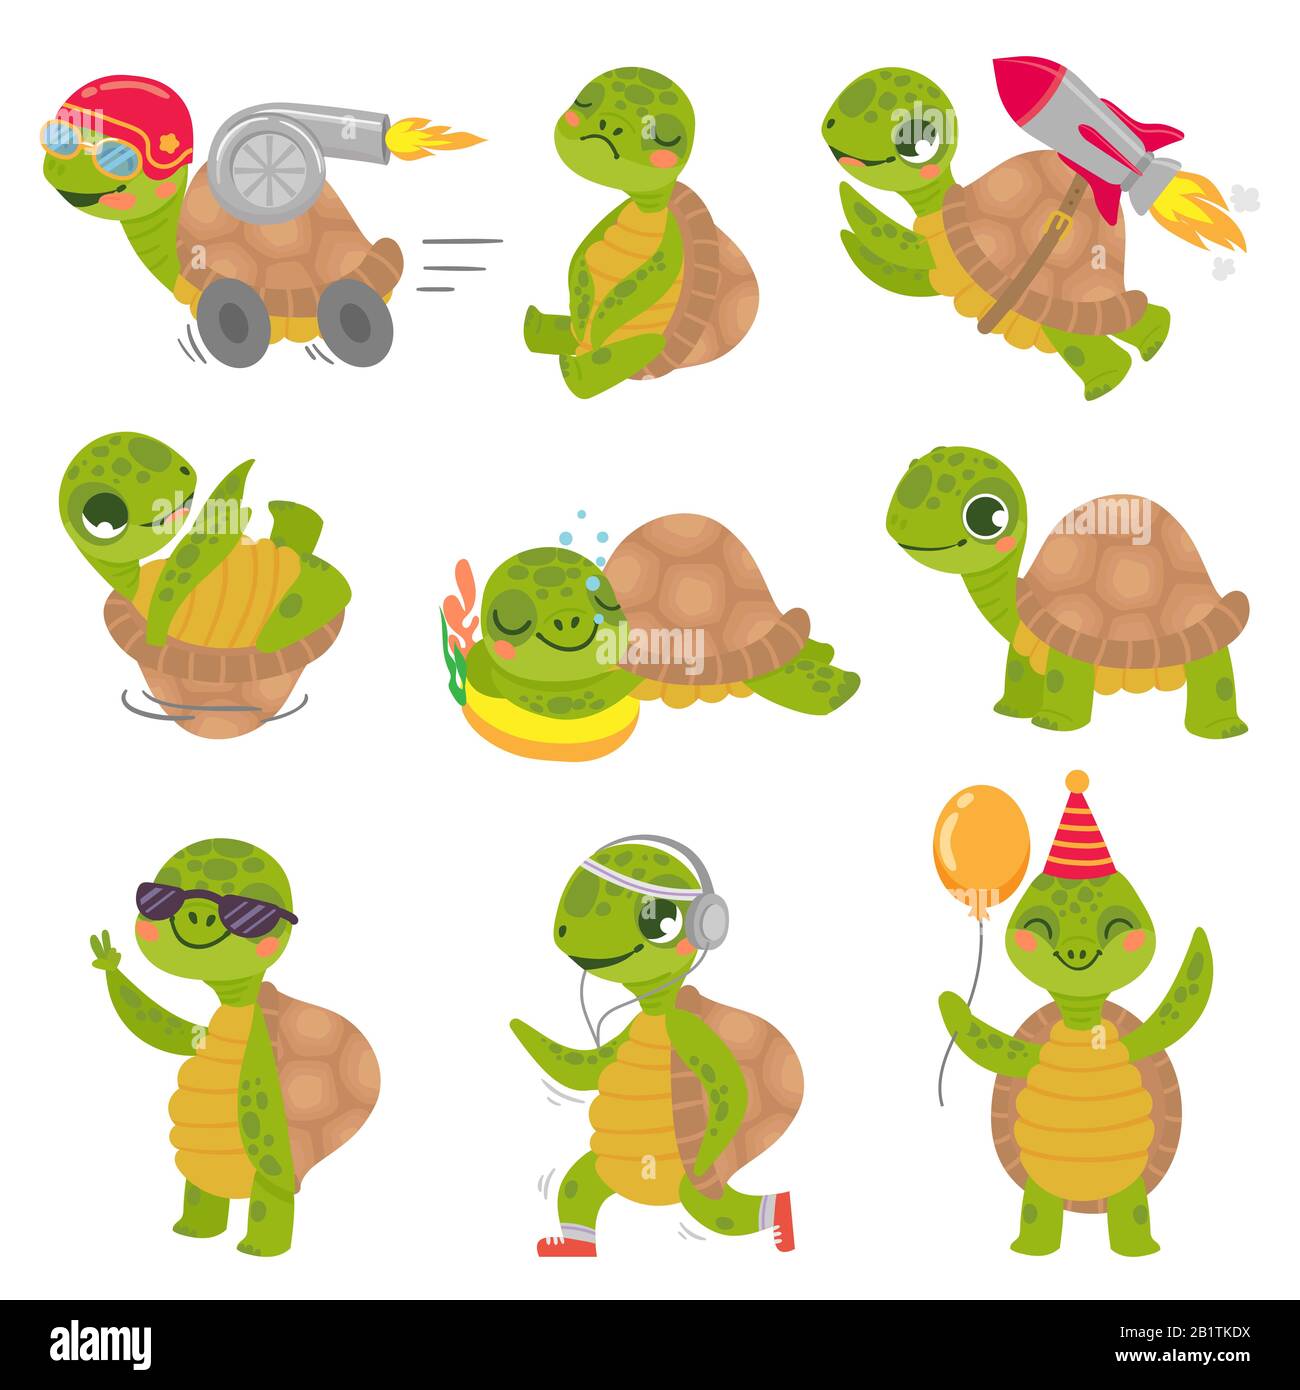 Schildkrötenkind. Süße kleine grüne Schildkröten Maskottchen, schnelle Raketenschildkröte und schlafende Schildkrötenvektor-Illustration Set Stock Vektor